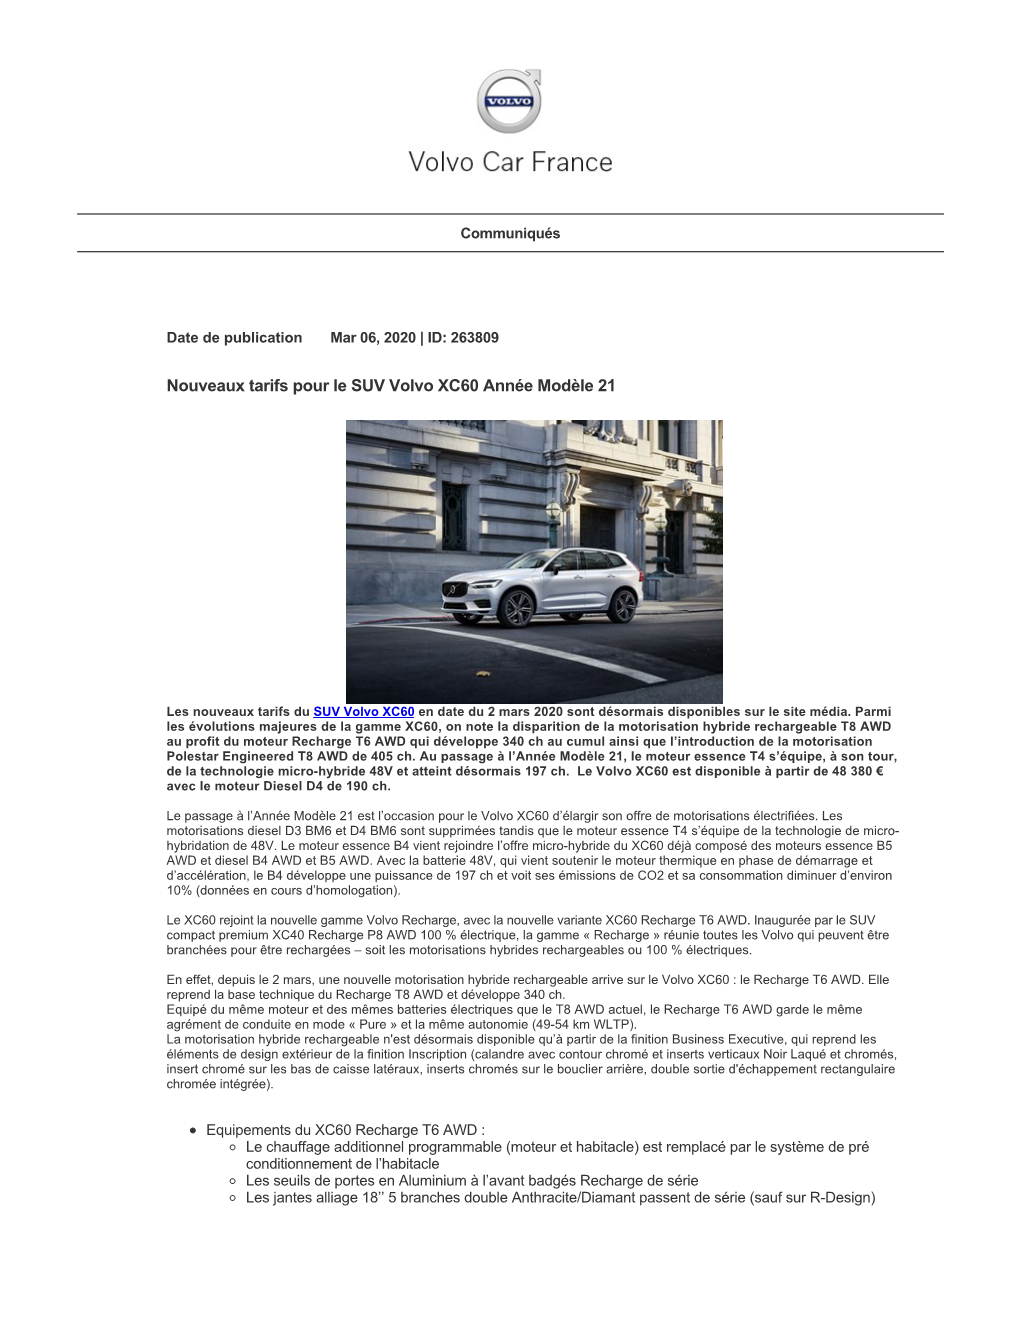 Nouveaux Tarifs Pour Le SUV Volvo XC60 Année Modèle 21